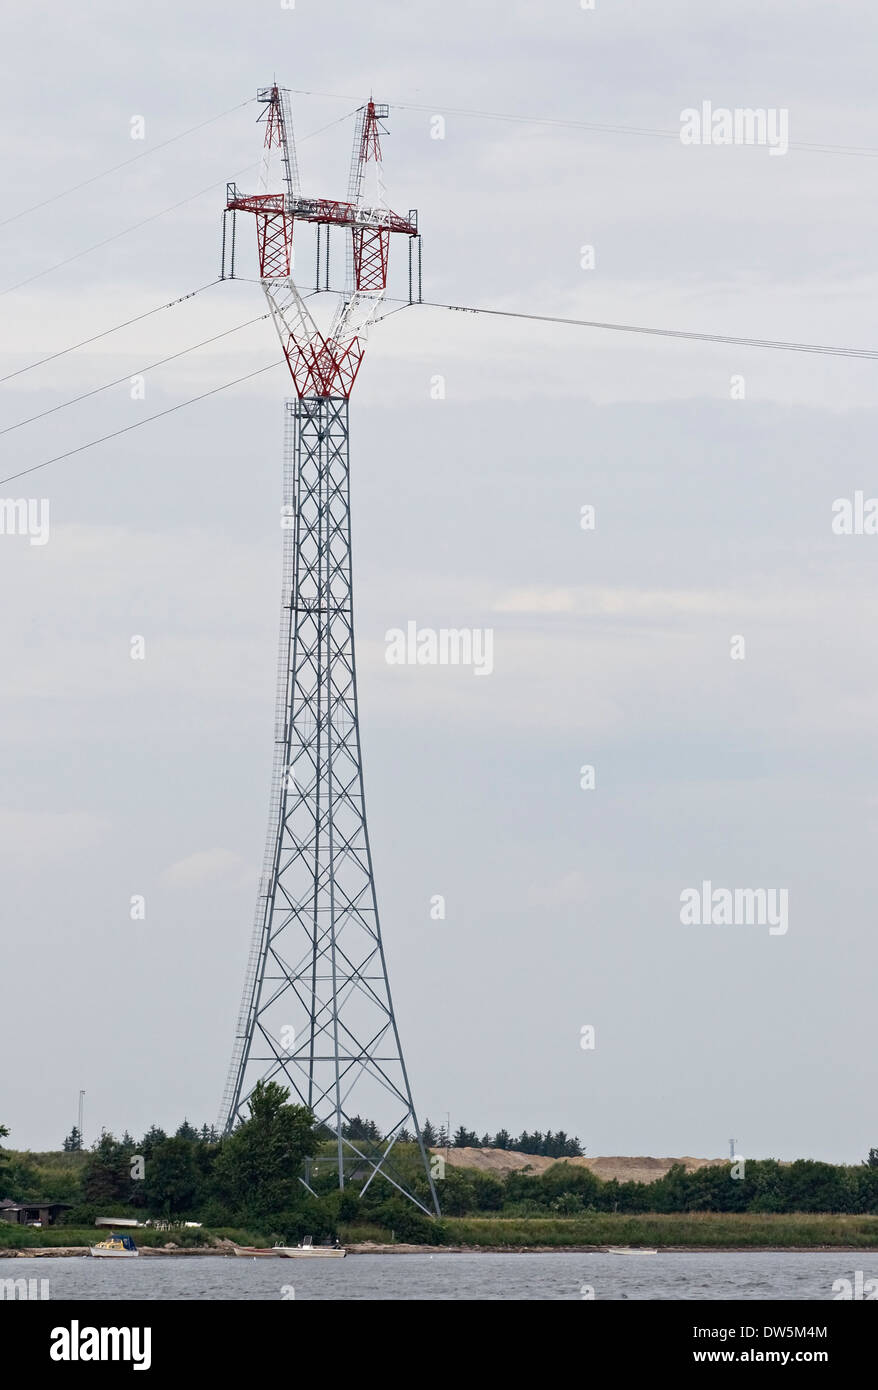 La tour de transmission de puissance, vue de dessous Banque D'Images